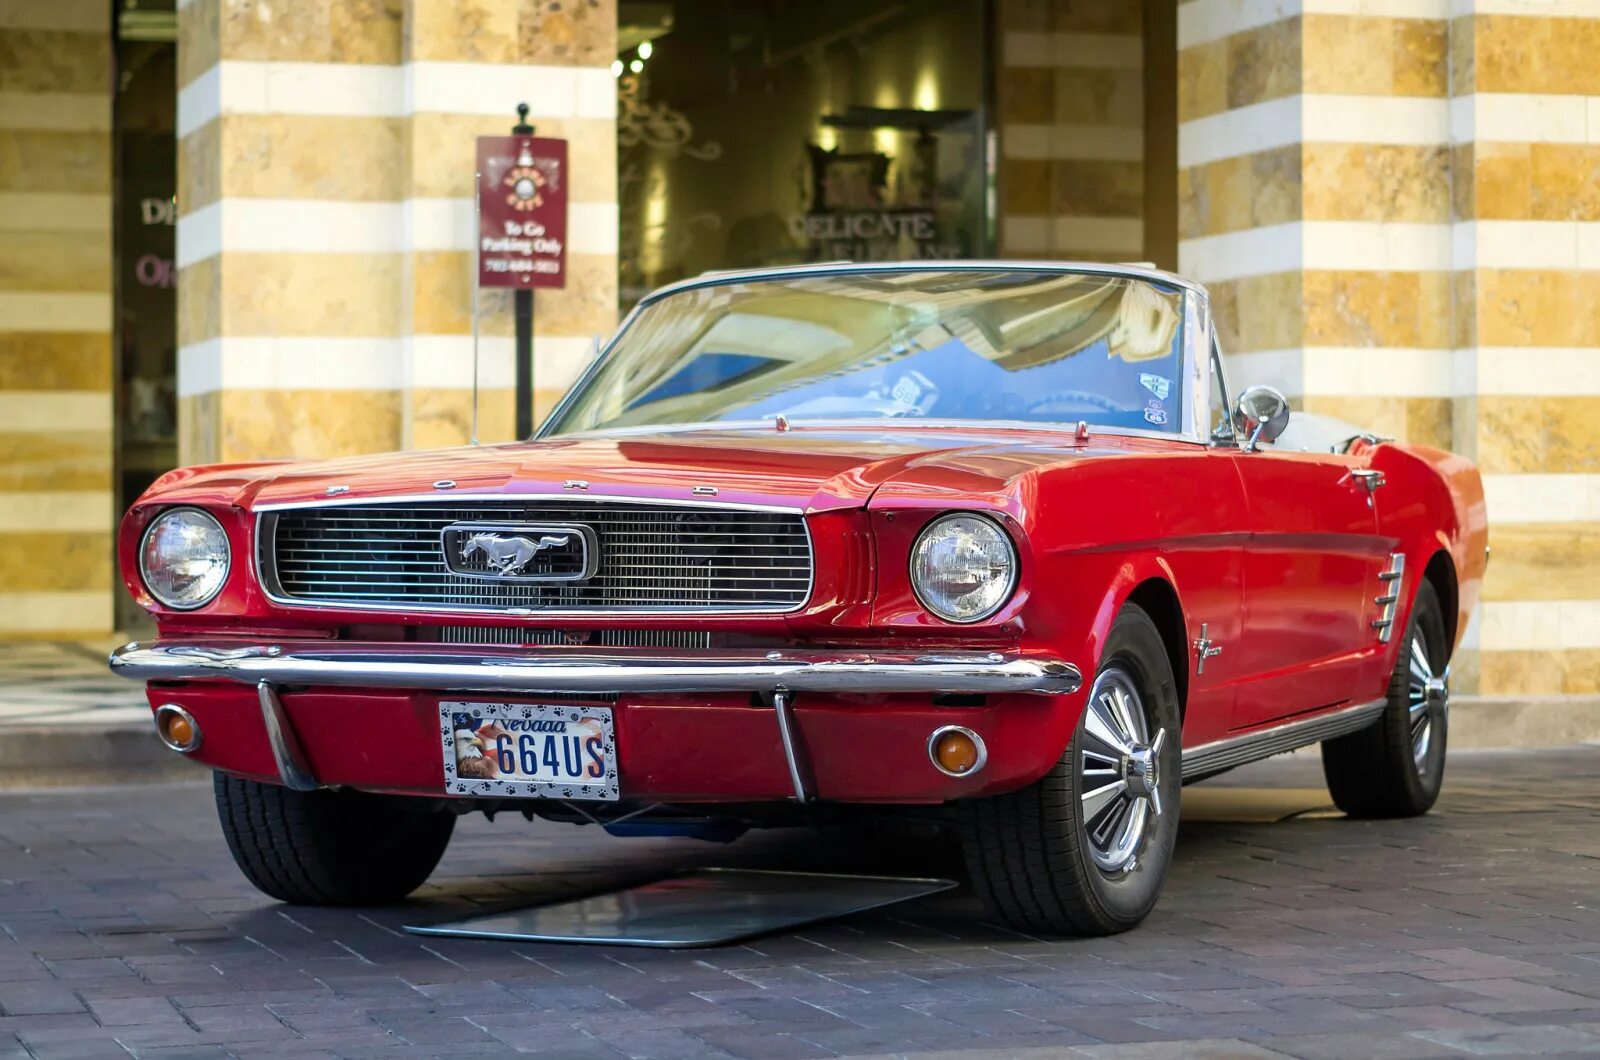 Форд Мустанг 1 поколения. Красный Ford Mustang 1966. Форд Мустанг 1960. Форд Мустанг 1969 красный. Первое поколение автомобилей